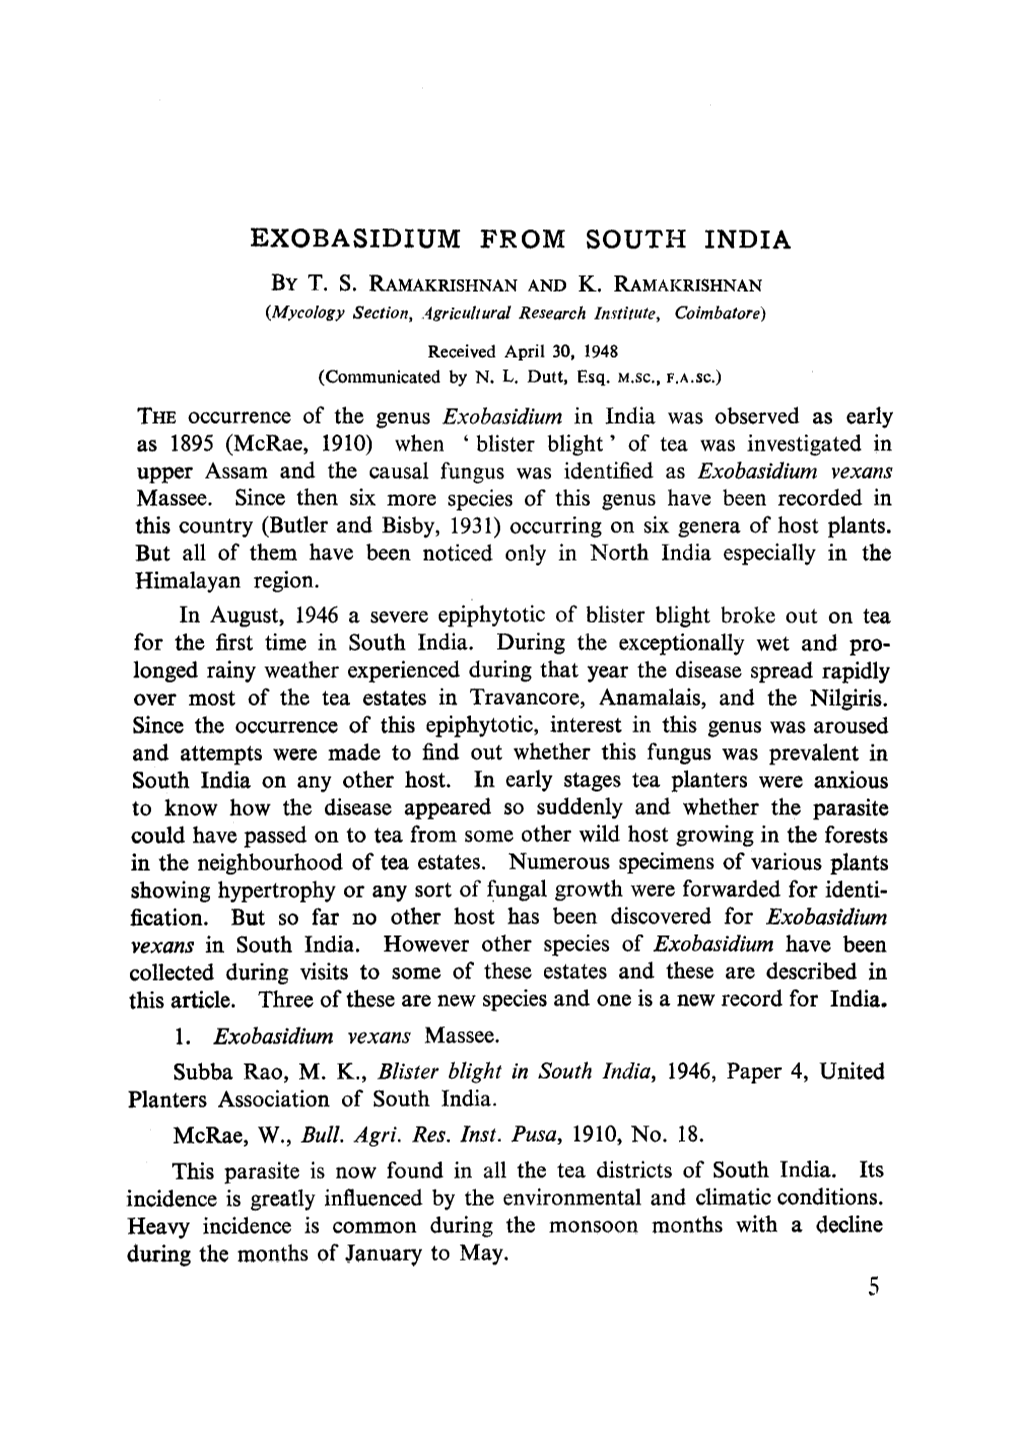 Exobasidium from South India